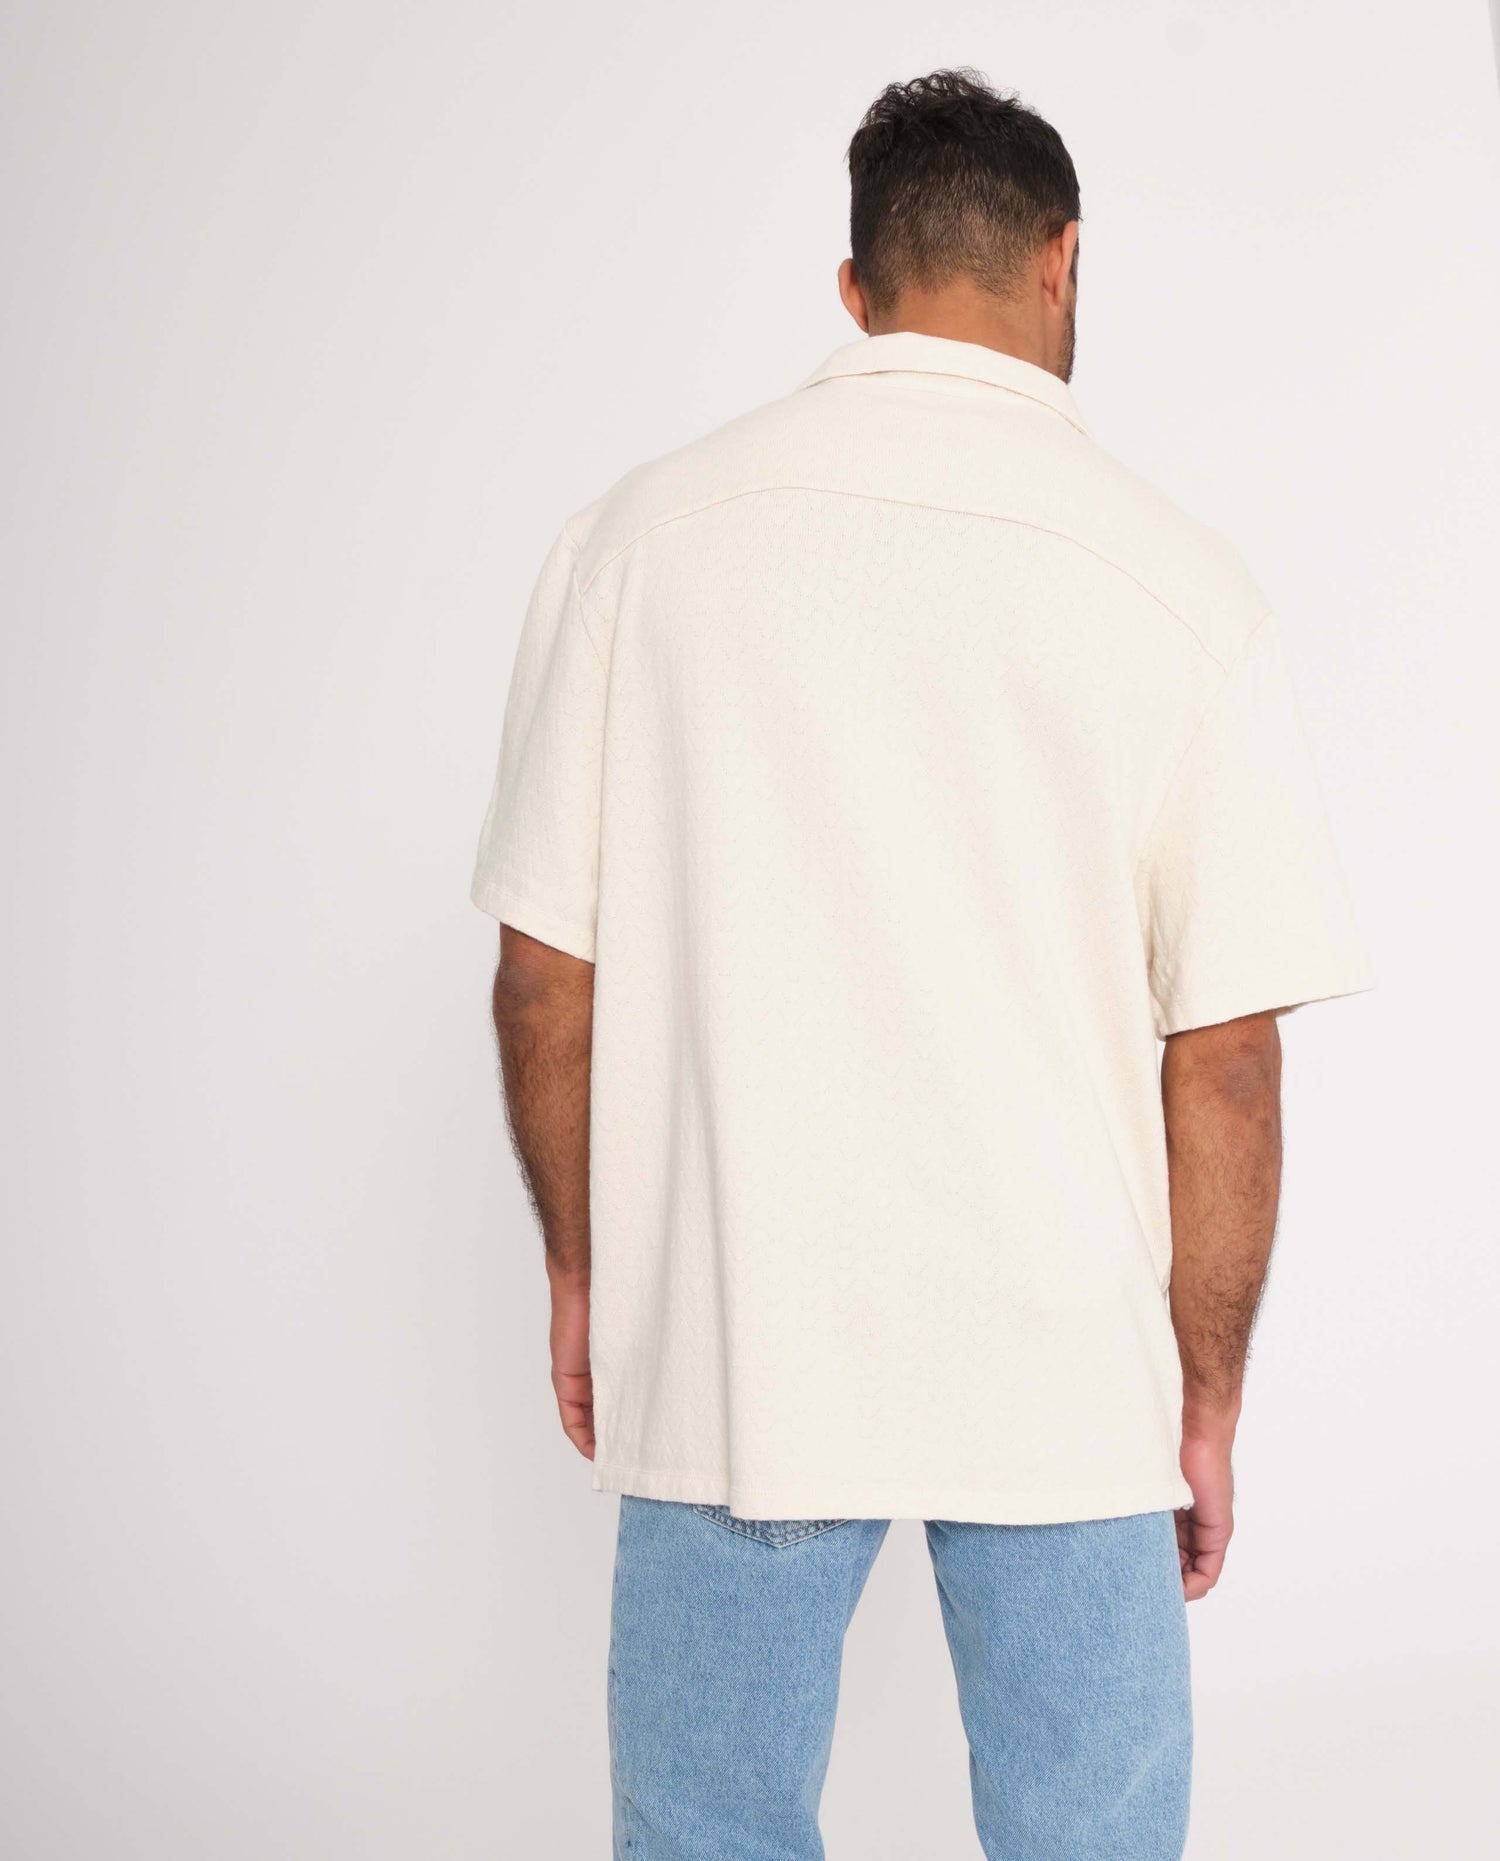 marché commun rotholz homme chemise manches courtes bowling coton biologique maille écru